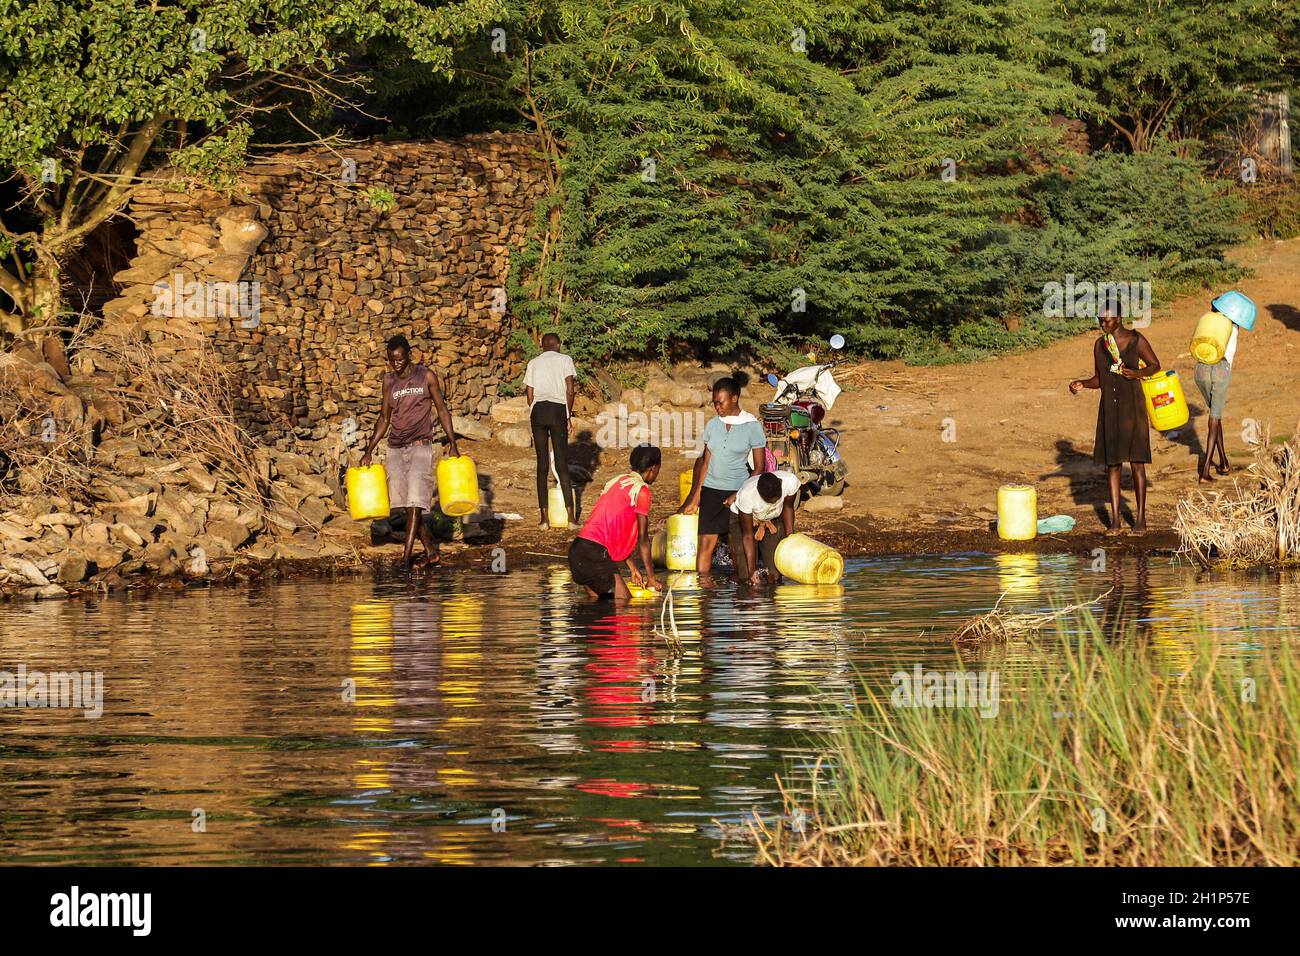 Nakuru, Kenya.17 octobre 2021.On voit des femmes chercher de l'eau dans des jerricanes en plastique sur les rives du lac Baringo.la situation d'inondation dans les lacs de la vallée du Rift exacerbée par les changements climatiques a entraîné le déplacement de milliers de personnes de leur foyer et de leur travail.Il y a de plus en plus d’appels à des dirigeants mondiaux pour qu’ils mettent davantage d’efforts à faire face aux effets du changement climatique.Les communautés vivant près des bassins versants du sud sont les plus touchées.Crédit : SOPA Images Limited/Alamy Live News Banque D'Images